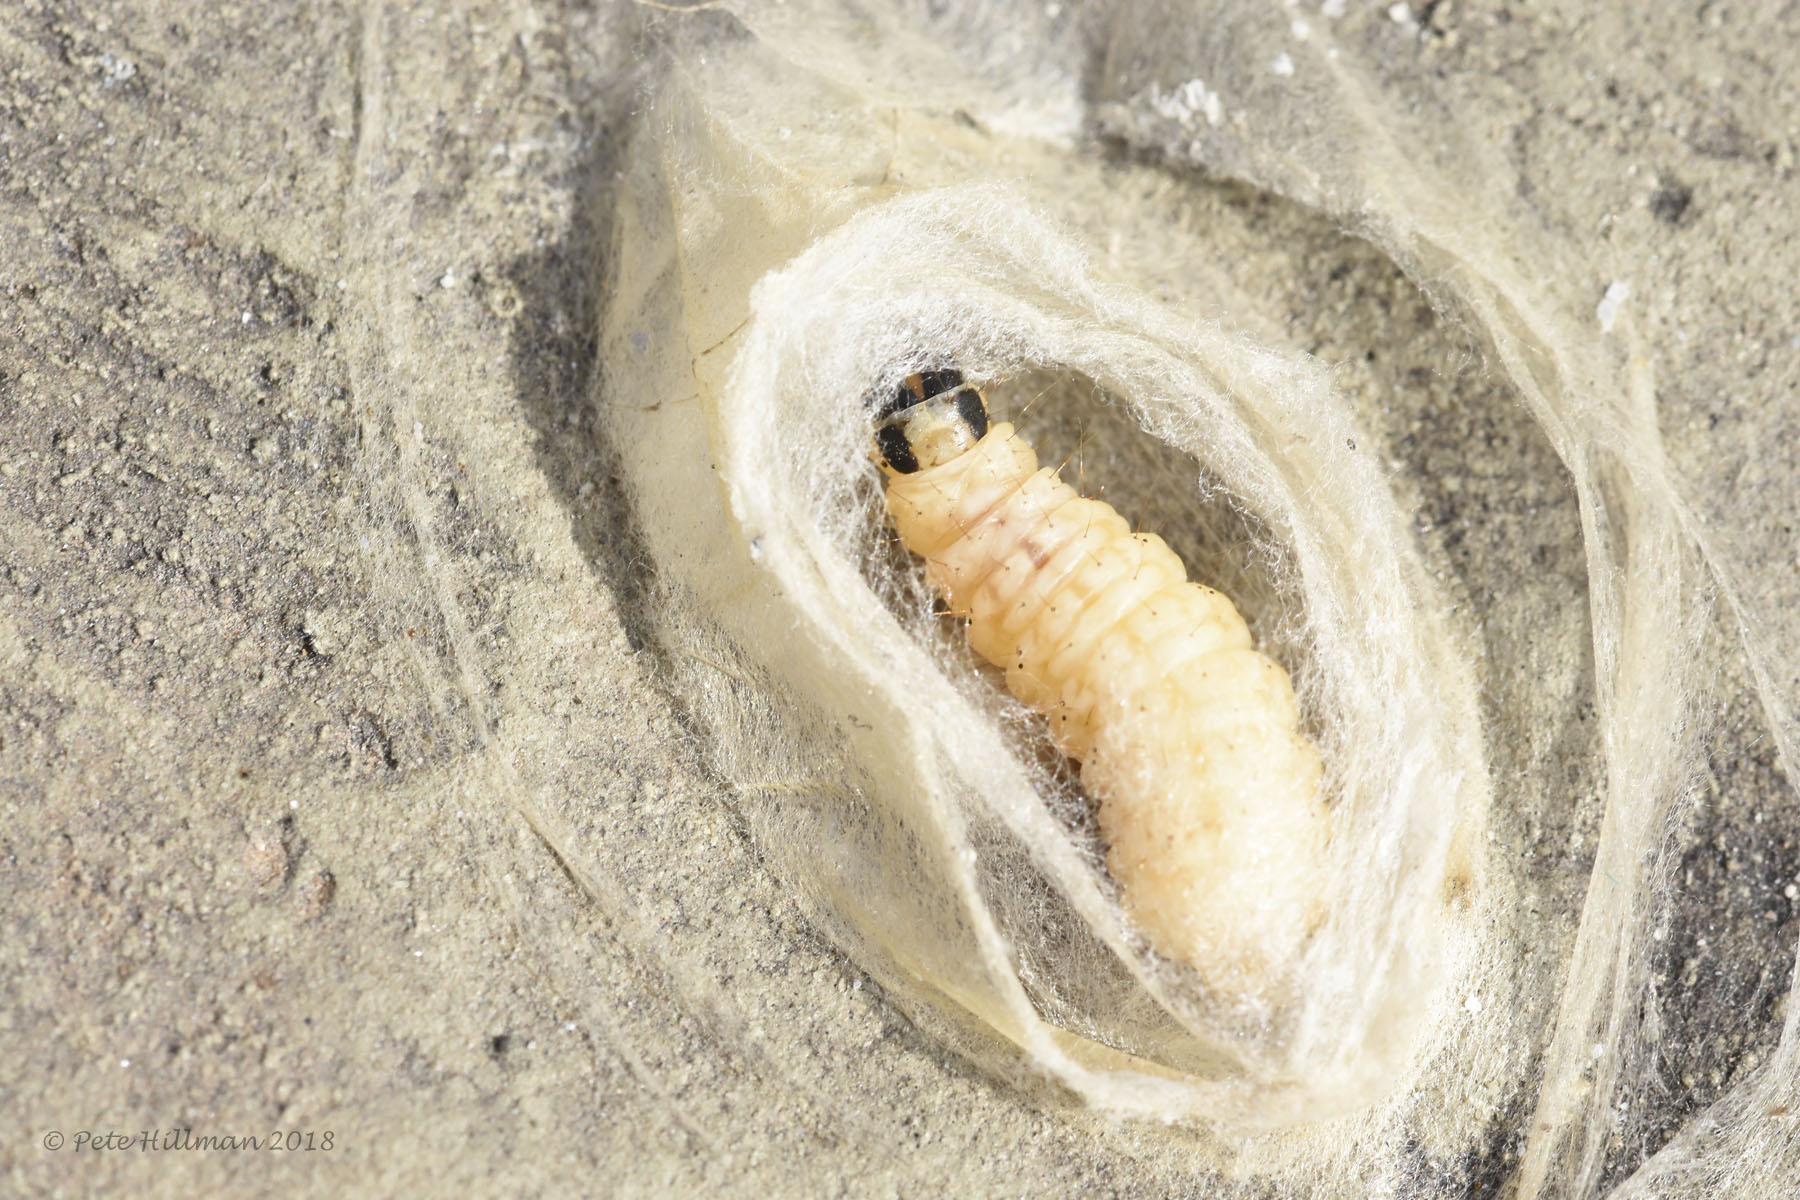 Small Magpie Eurrhypara hortulata larva